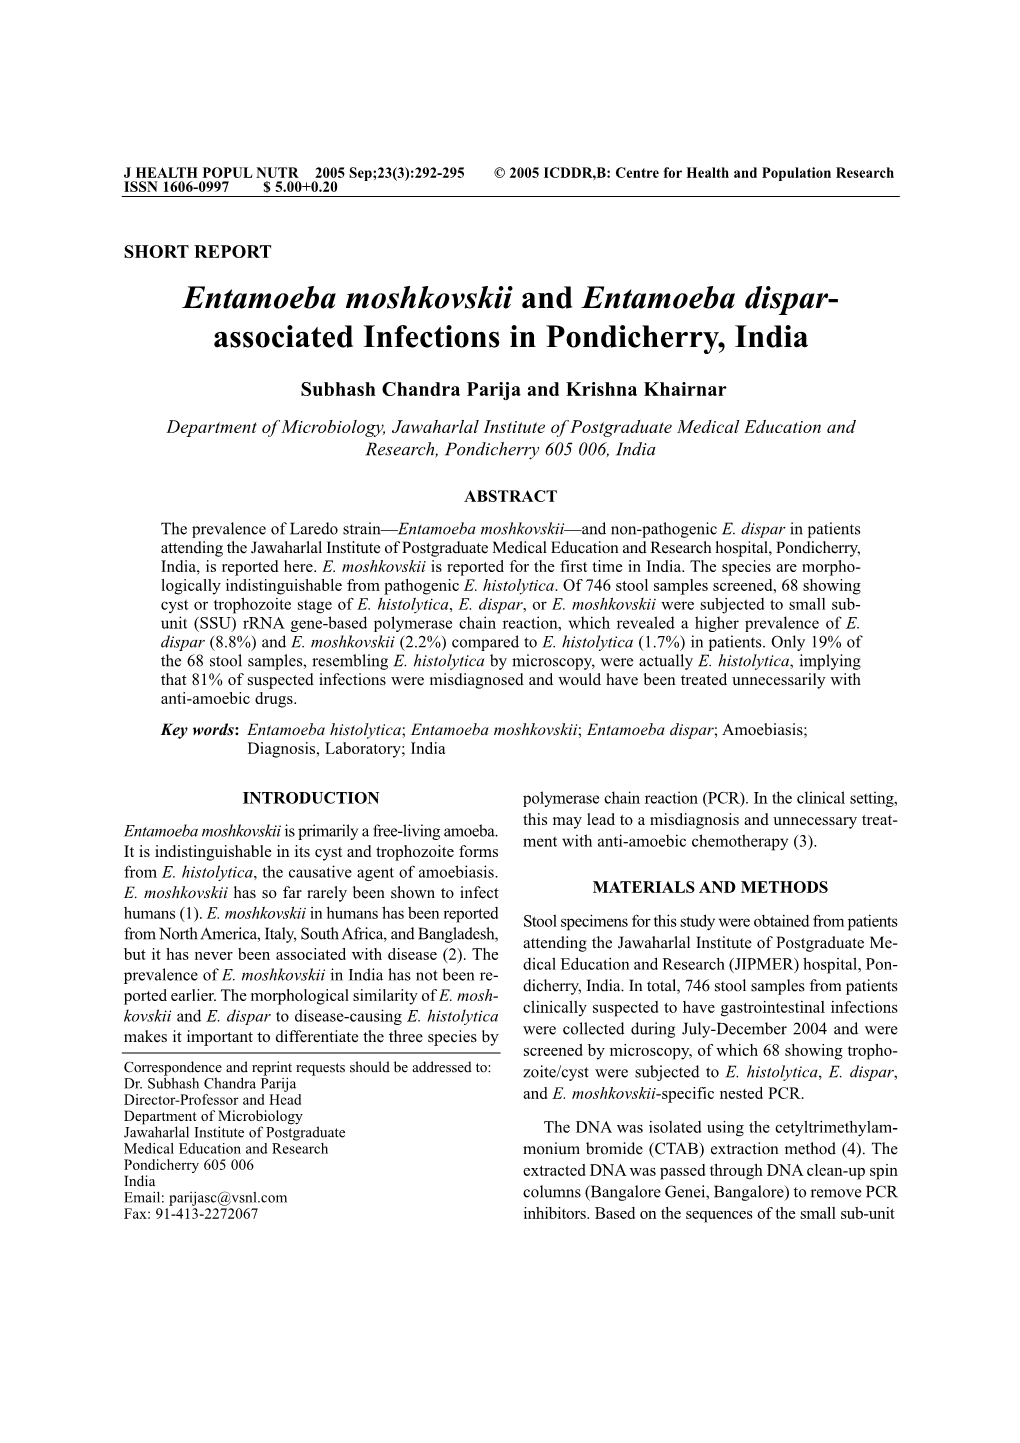 Entamoeba Moshkovskii and Entamoeba Dispar- Associated Infections in Pondicherry, India